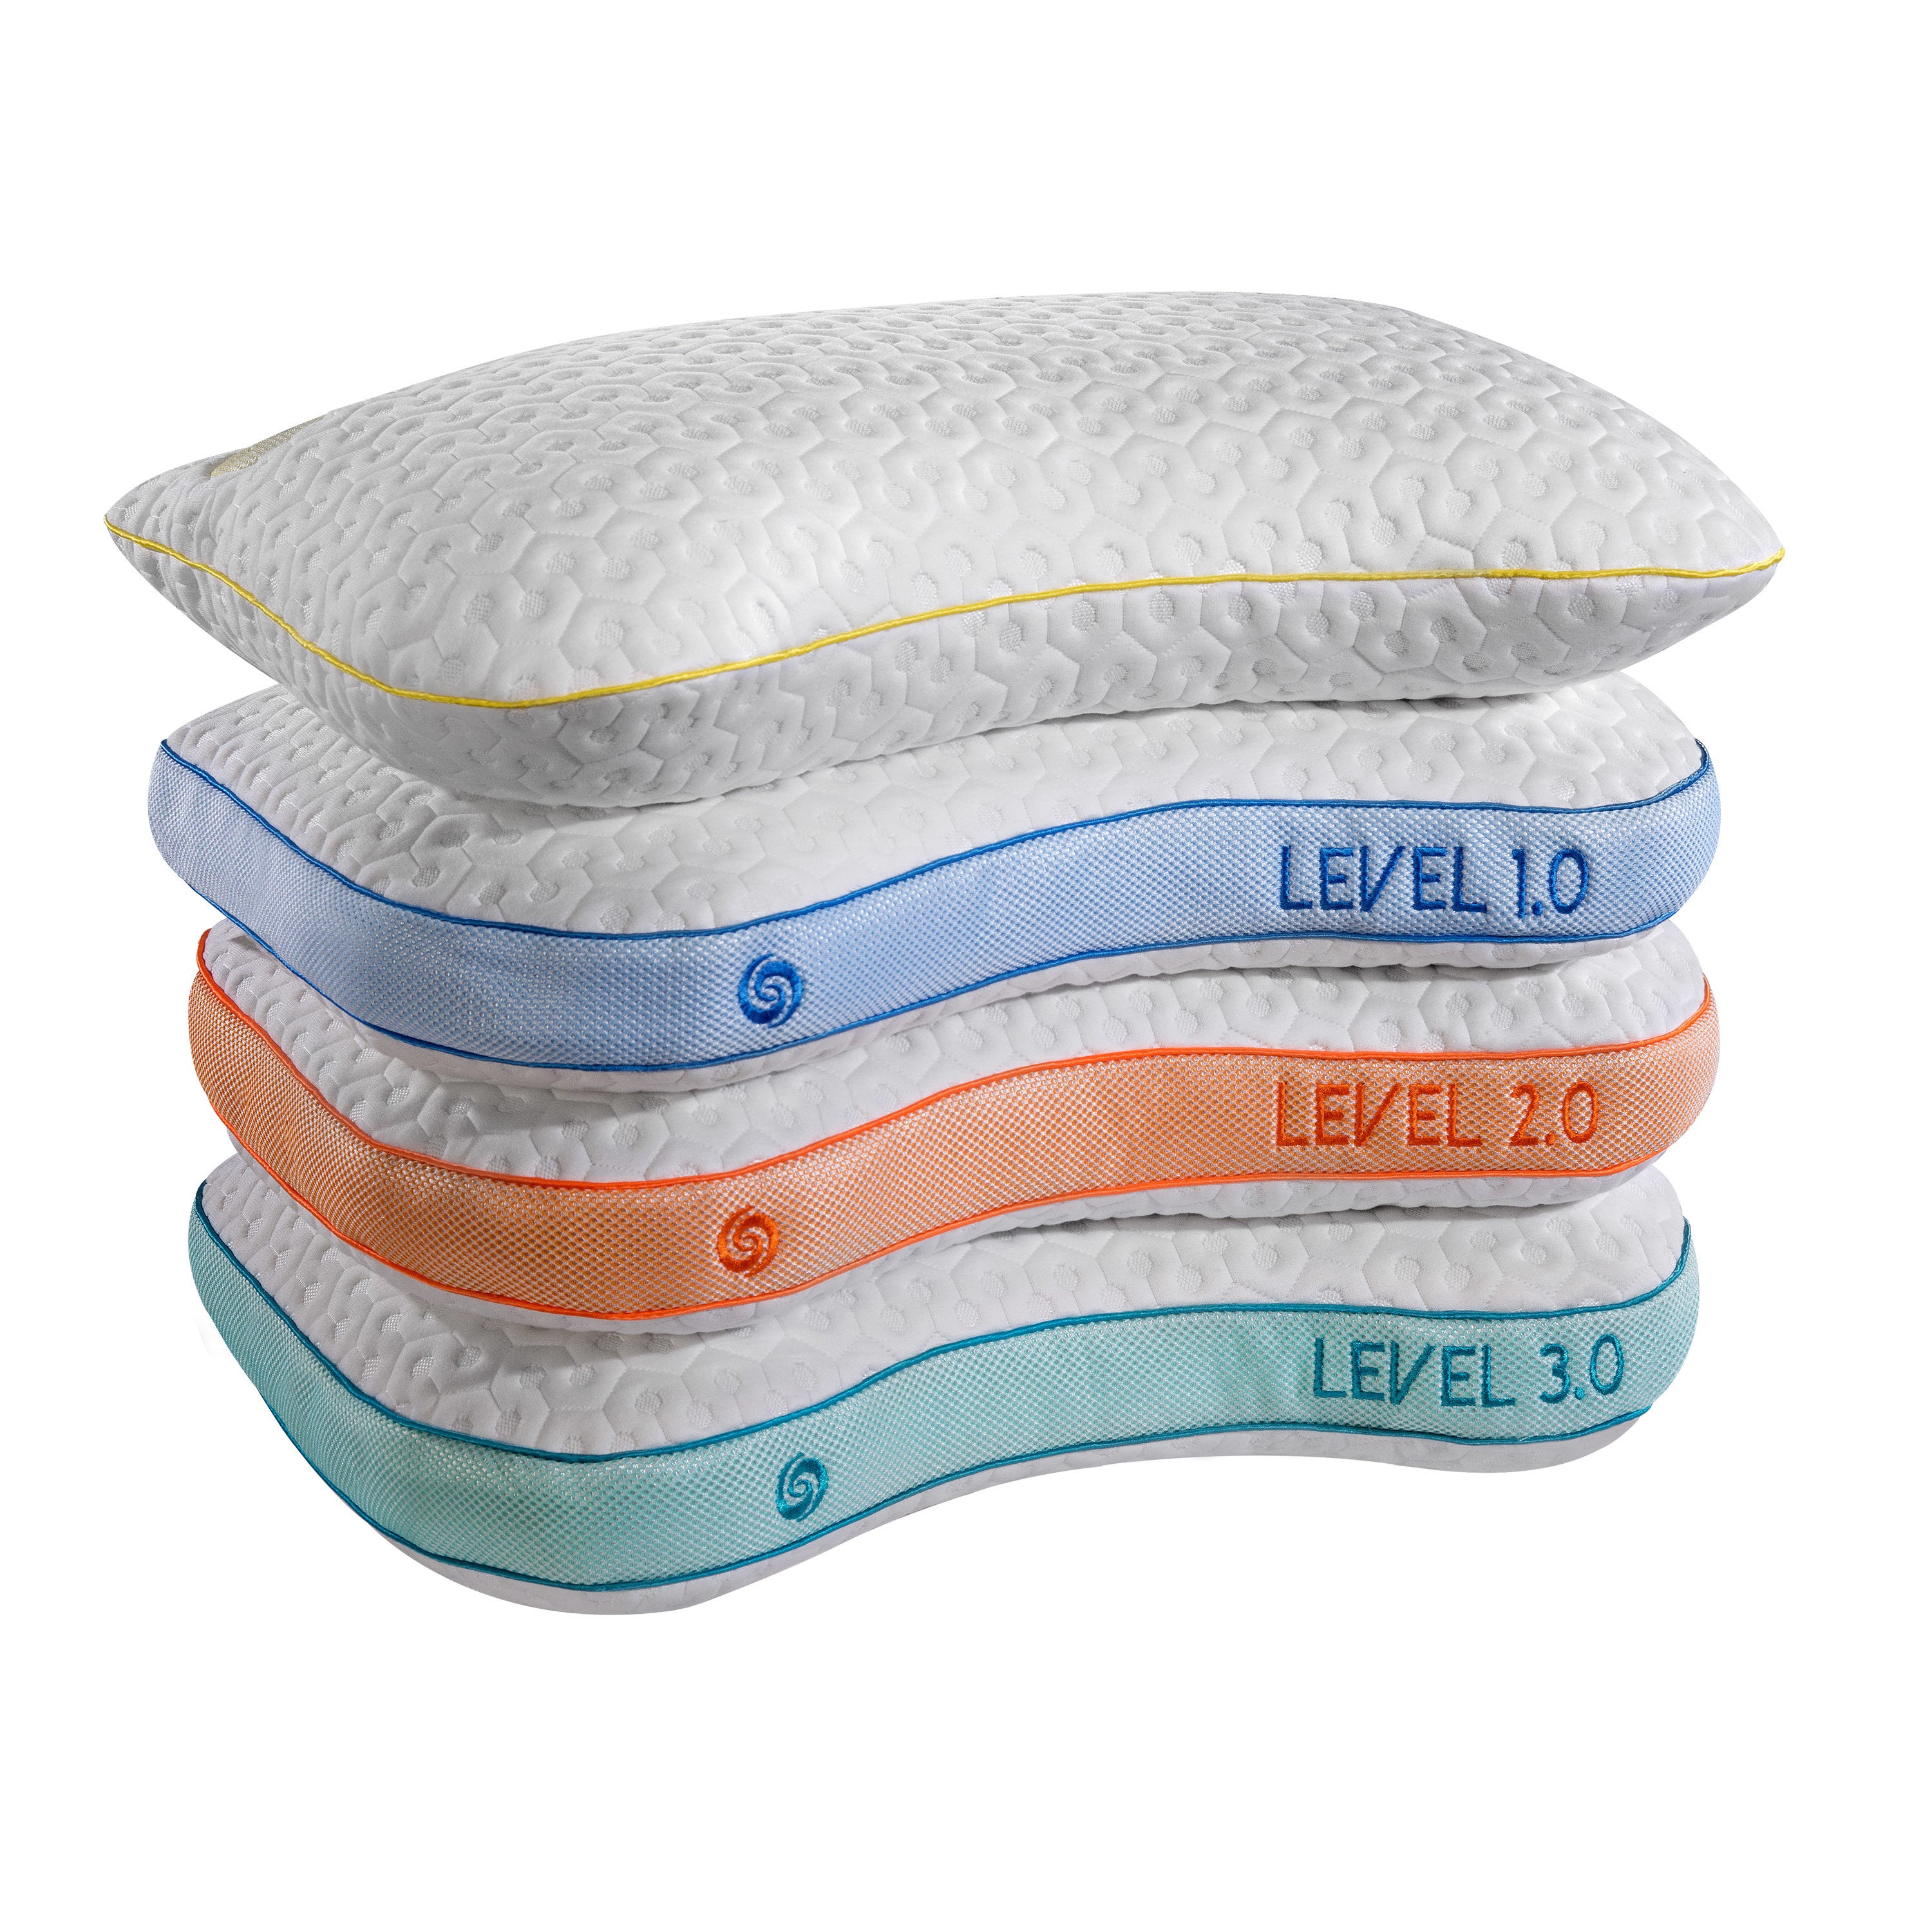 Level 0.0 Pillow by Bedgear Pillows